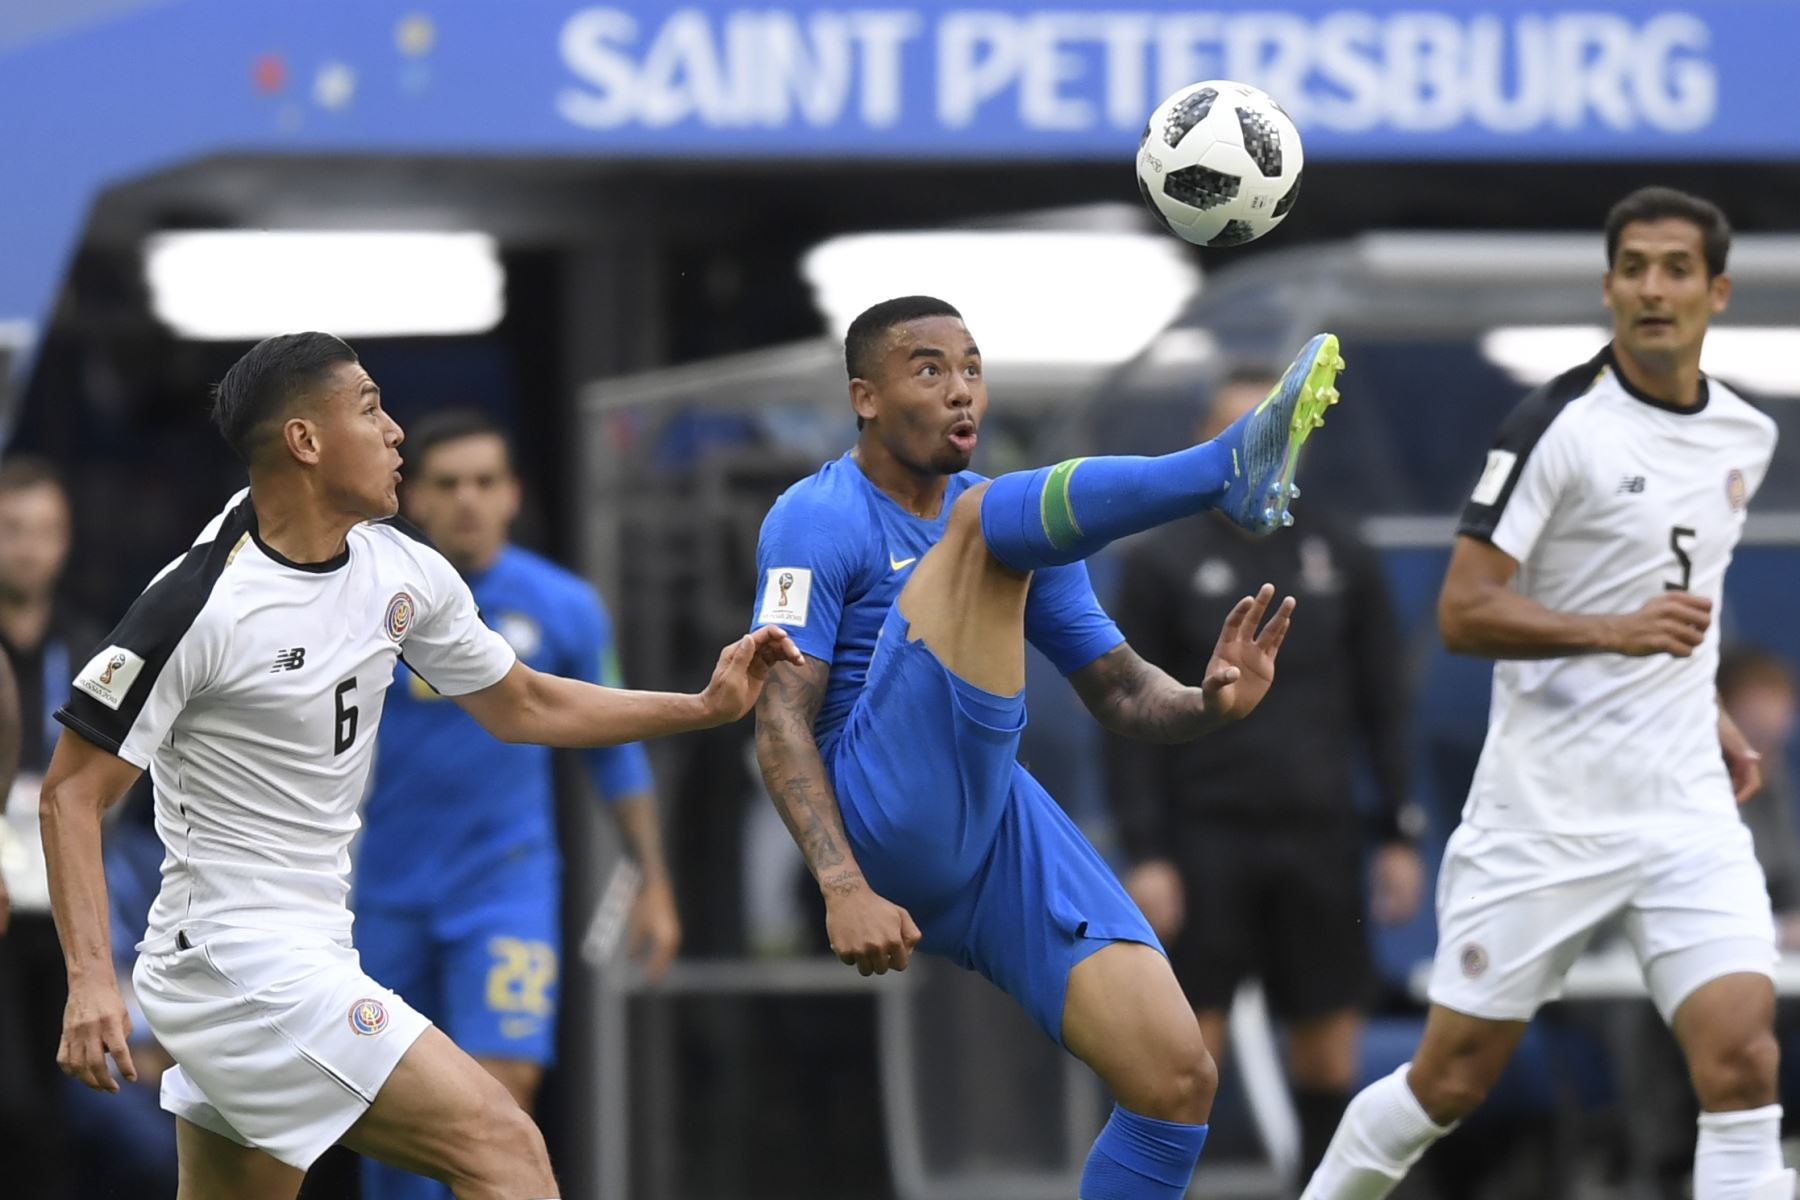 El delantero brasileño Gabriel Jesus (C) patea el balón durante el partido de fútbol del Grupo E de la Copa Mundial Rusia 2018 entre Brasil y Costa Rica en el estadio de San Petersburgo el 22 de junio de 2018. / AFP